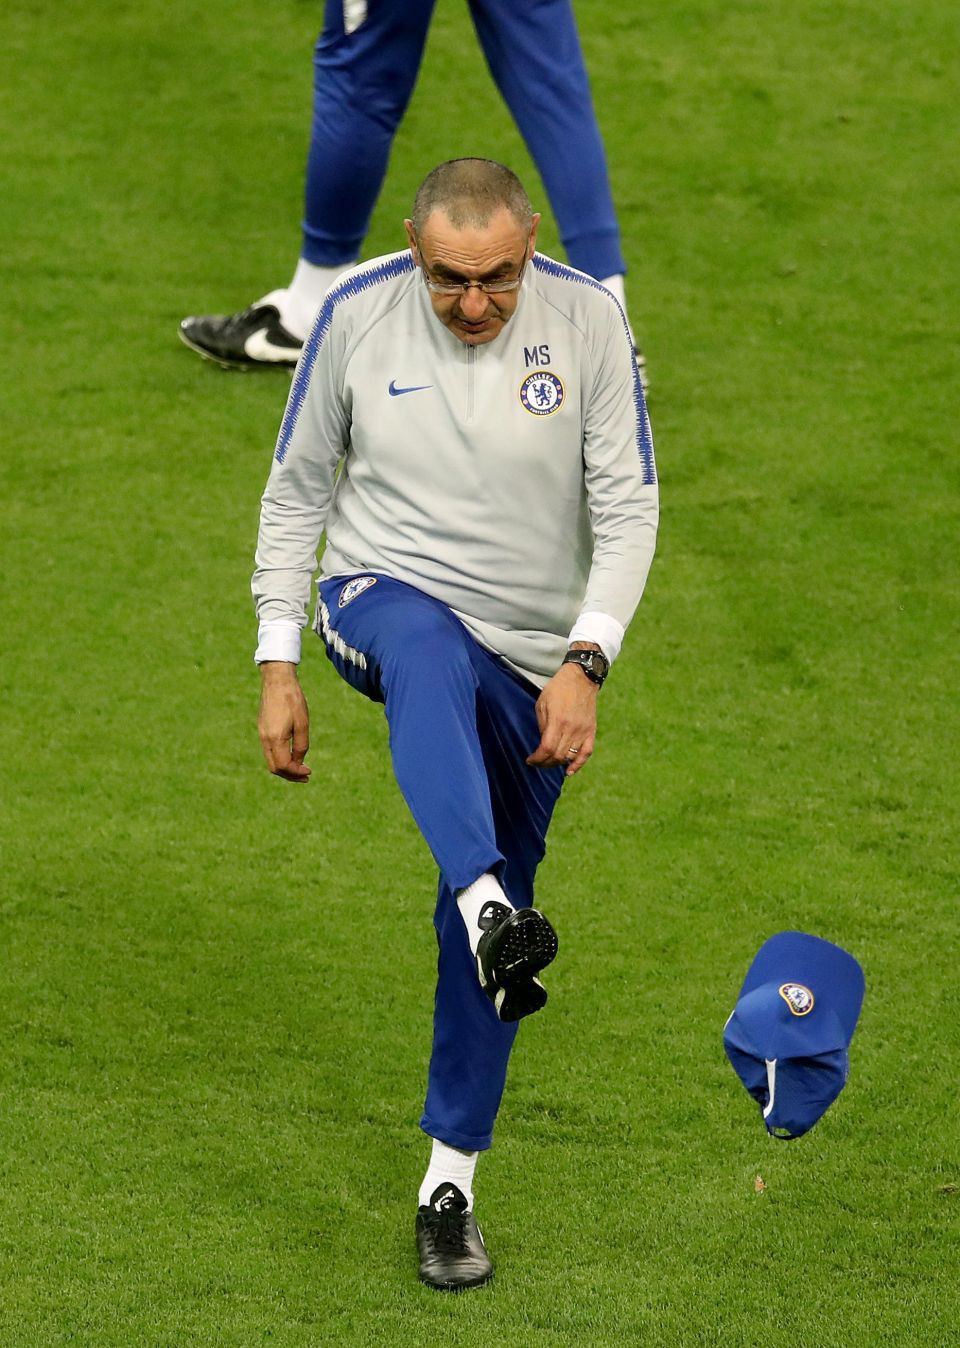 Sự cố trước chung kết Europa League: Cầu thủ Chelsea thúc cùi chỏ vào mặt đồng đội, HLV nổi cáu đá bay chiếc mũ, tức giận rời khỏi buổi tập - Ảnh 3.